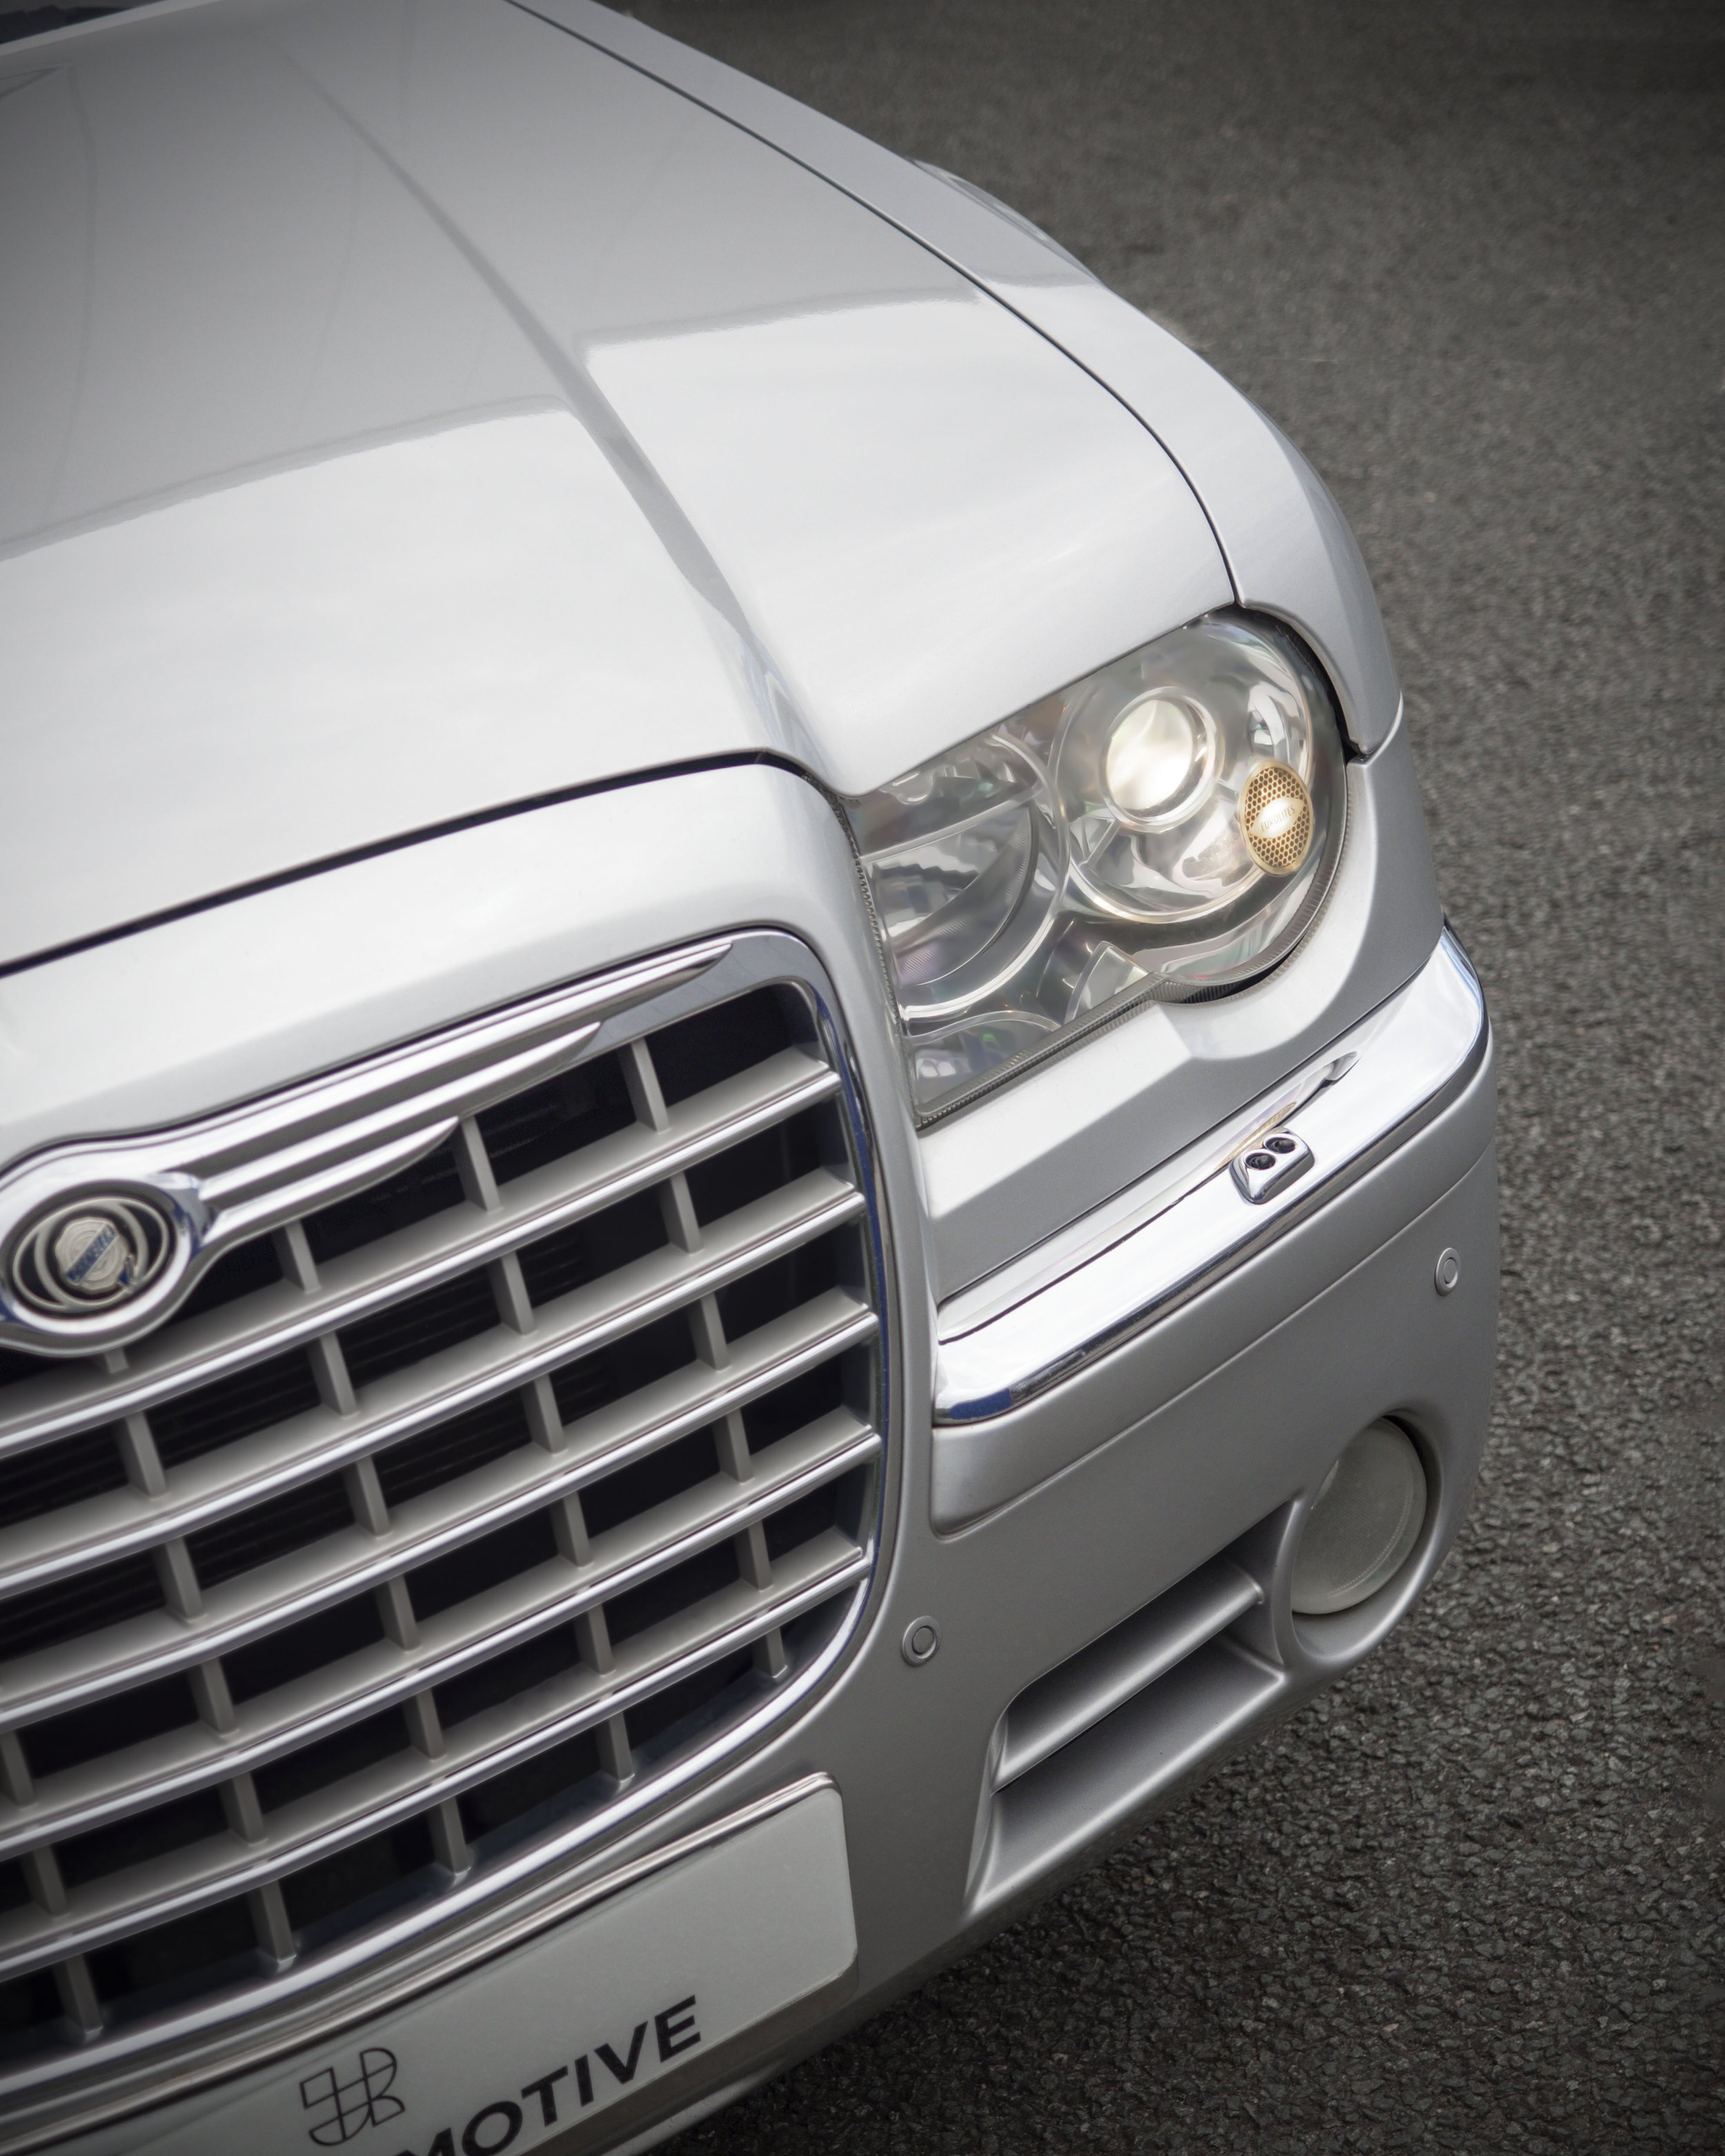 Chrysler 300c Front Detail 4x5.jpg